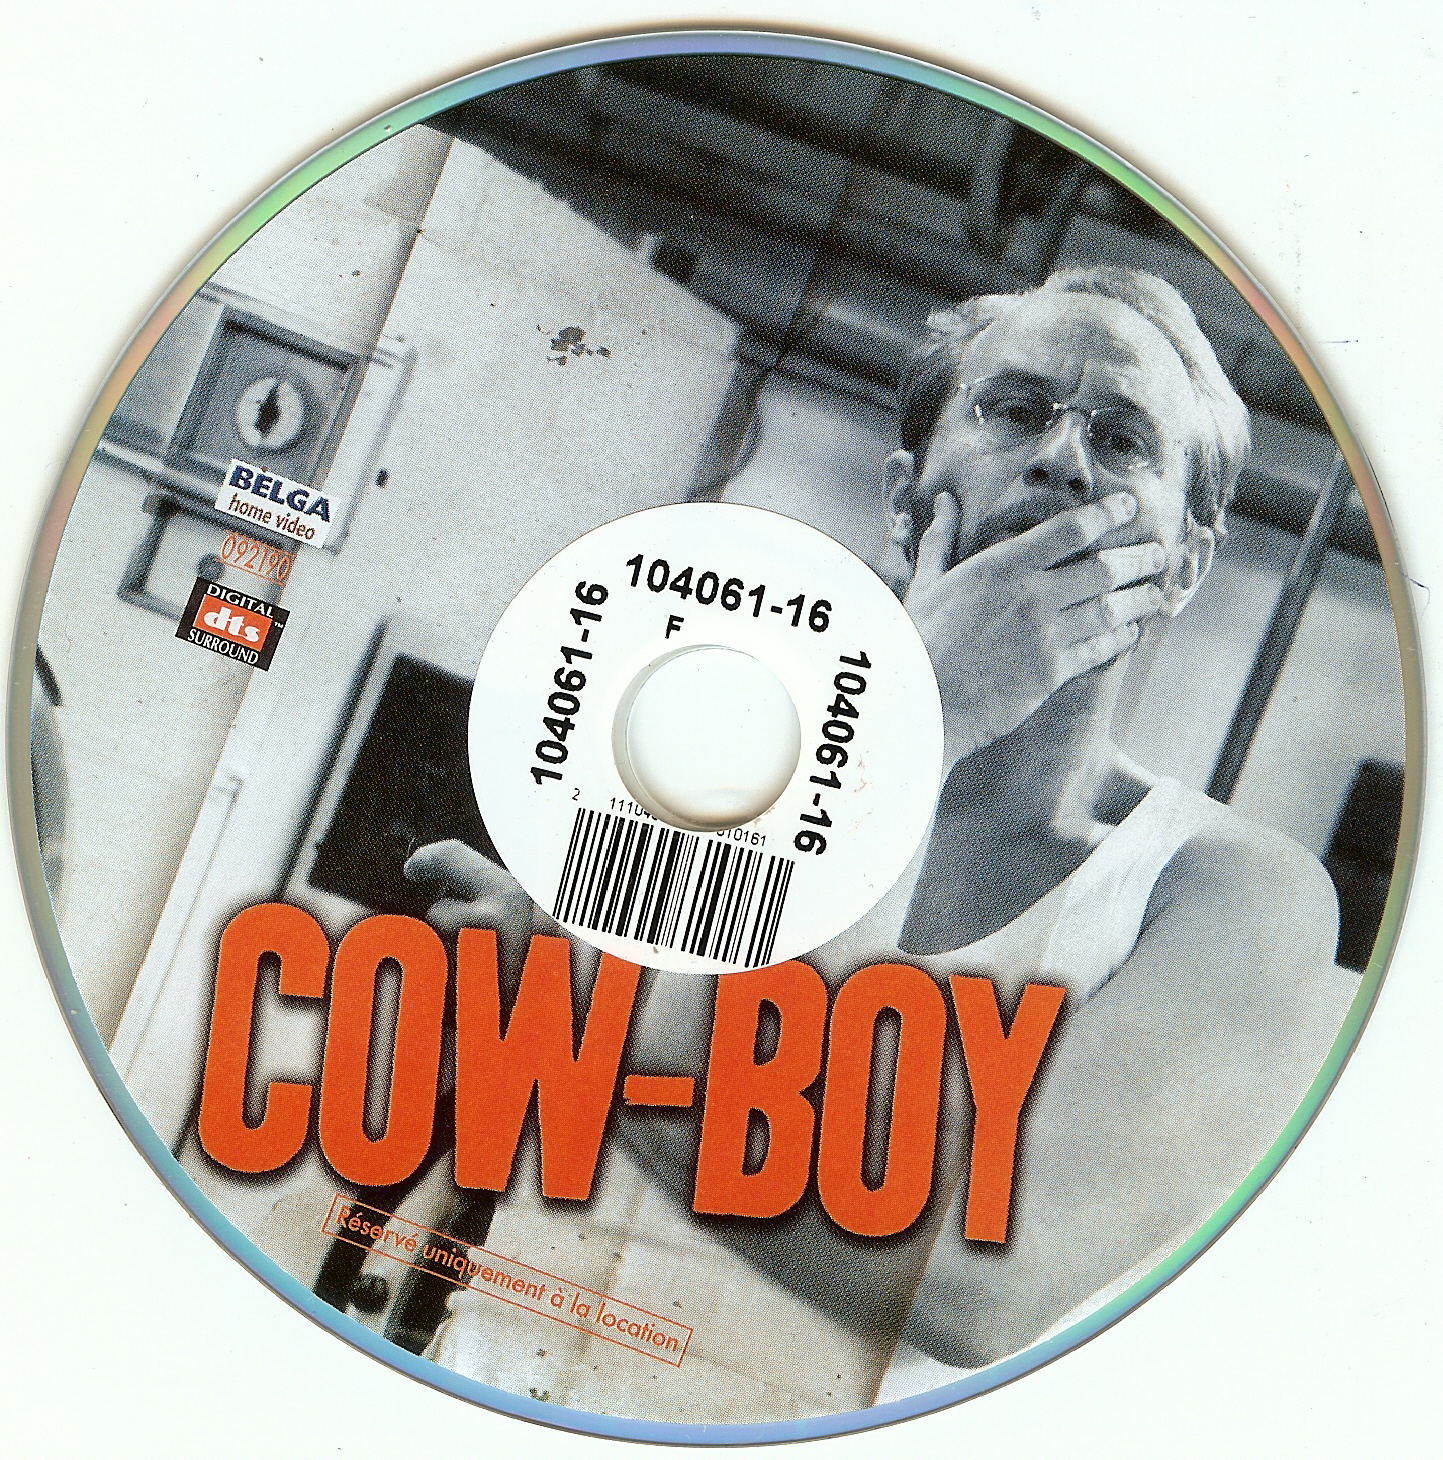 Cow-boy